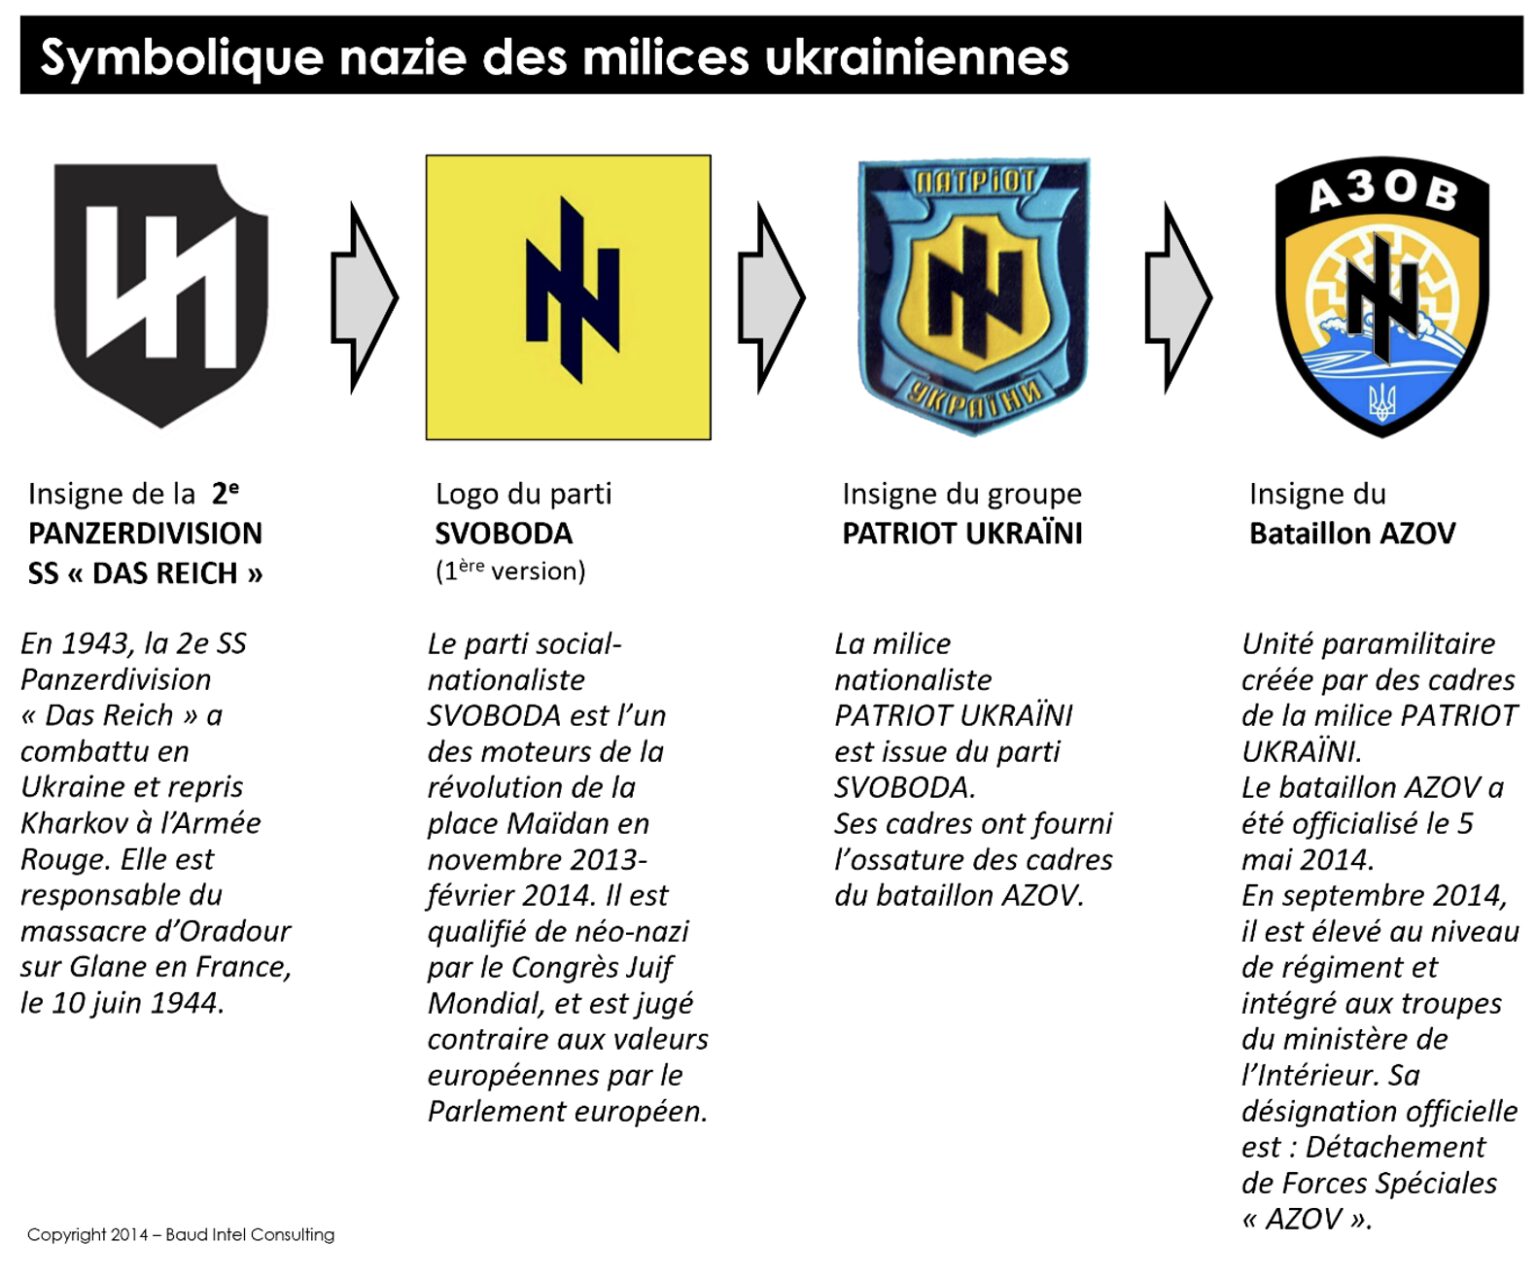 Symbolique nazie des milices ukrainiennes